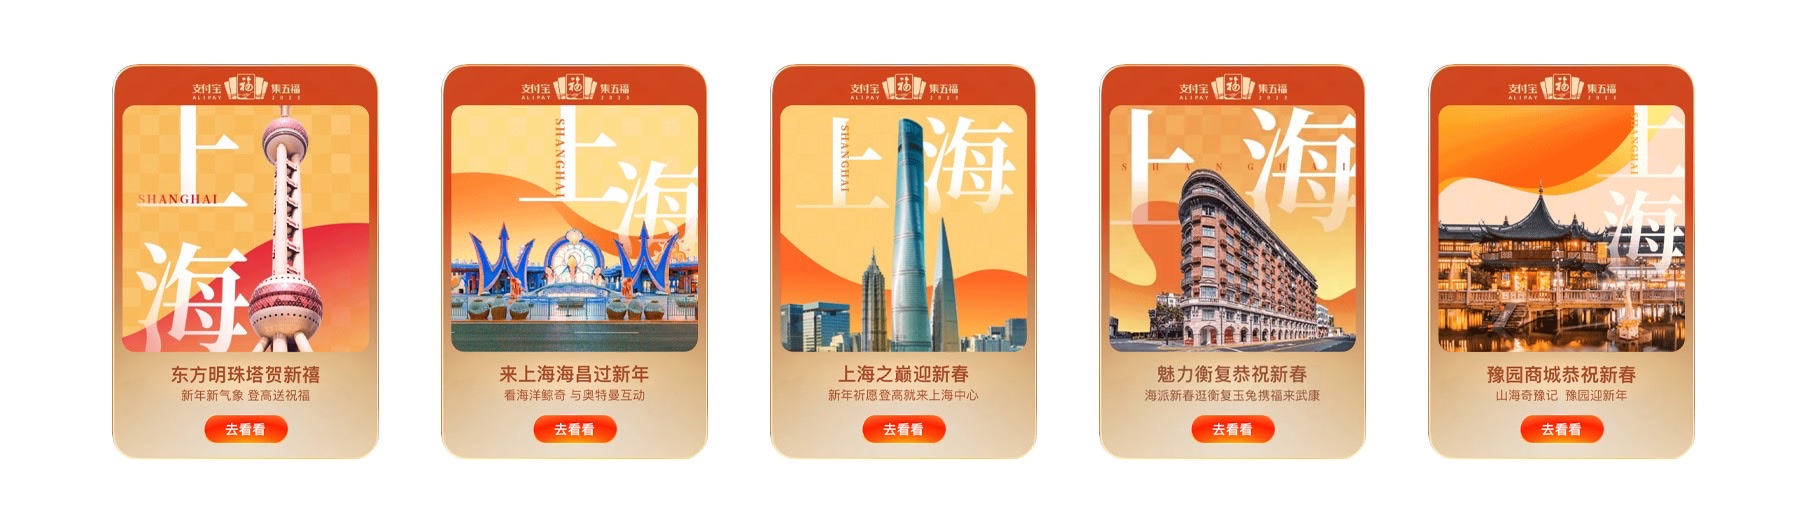 【文化旅游】上海“扫福集福”串联城市文旅资源